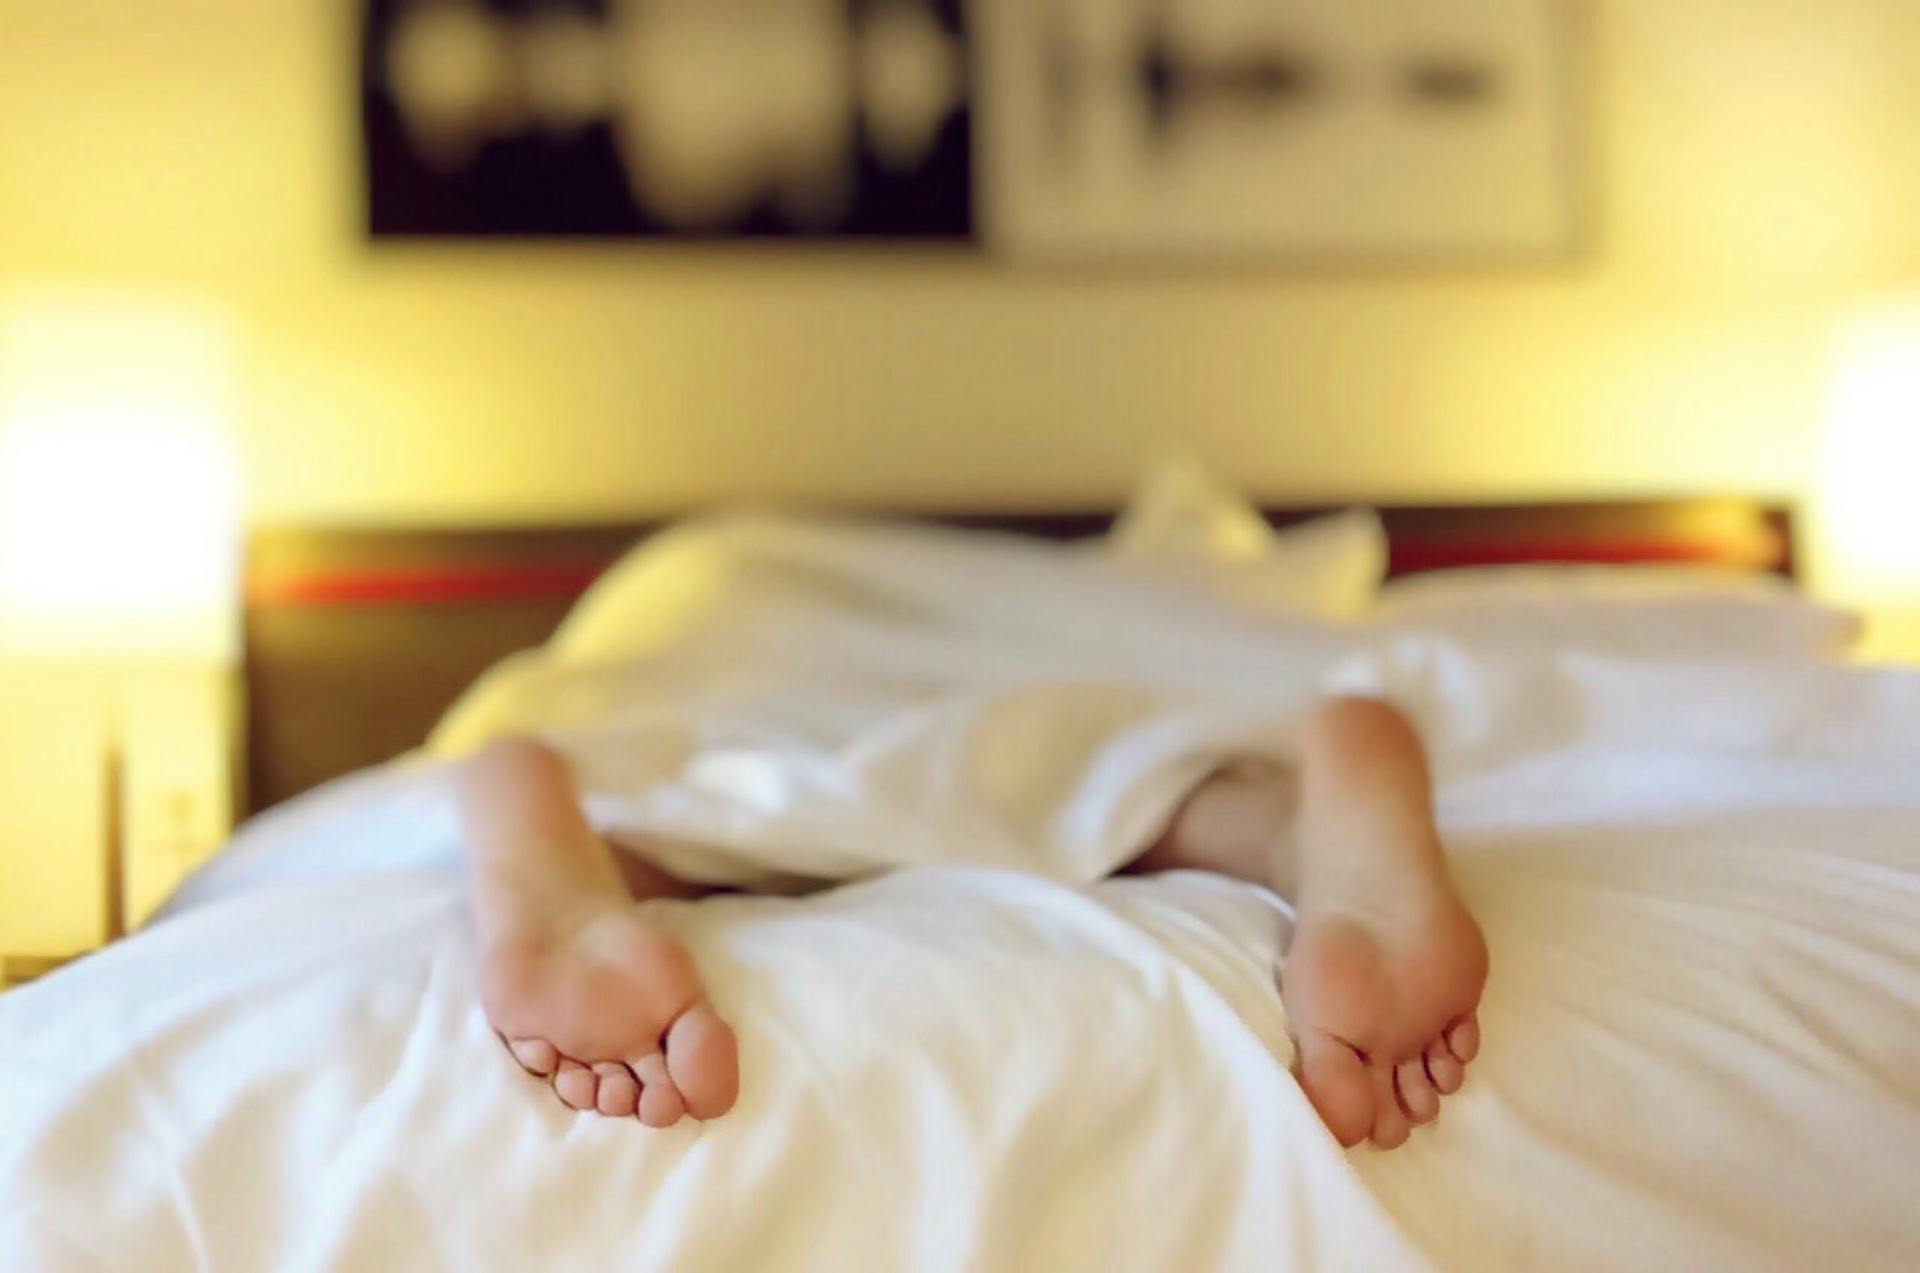 Une personne allongée à plat ventre sur un lit | Source : Pexels